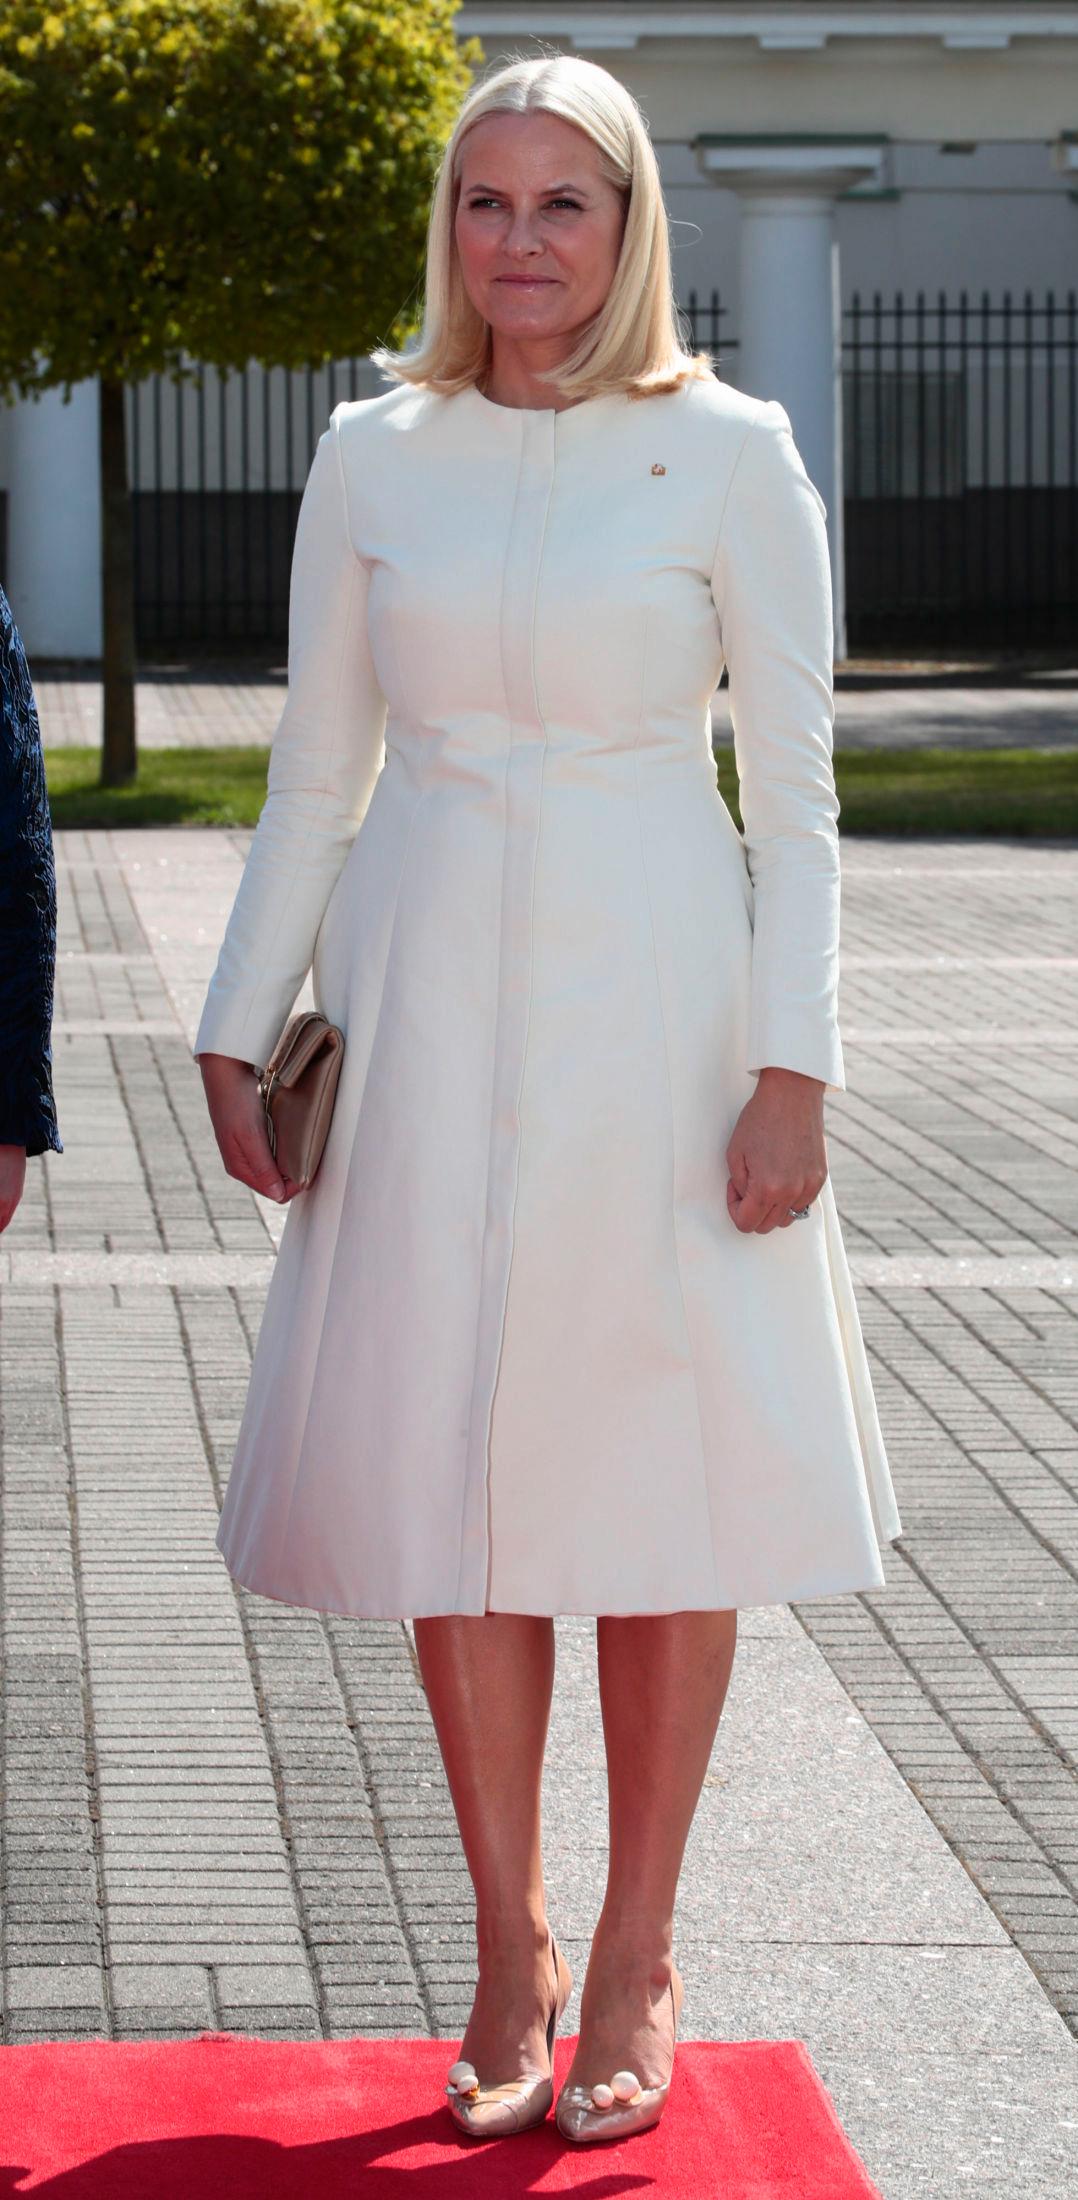 DETALJRIKE SKO: Kronprinsesse Mette-Marit i elegant hvit kåpe og nude pumps, legg merke til detaljene på skoene. Foto: Lise Åserud/NTB scanpix